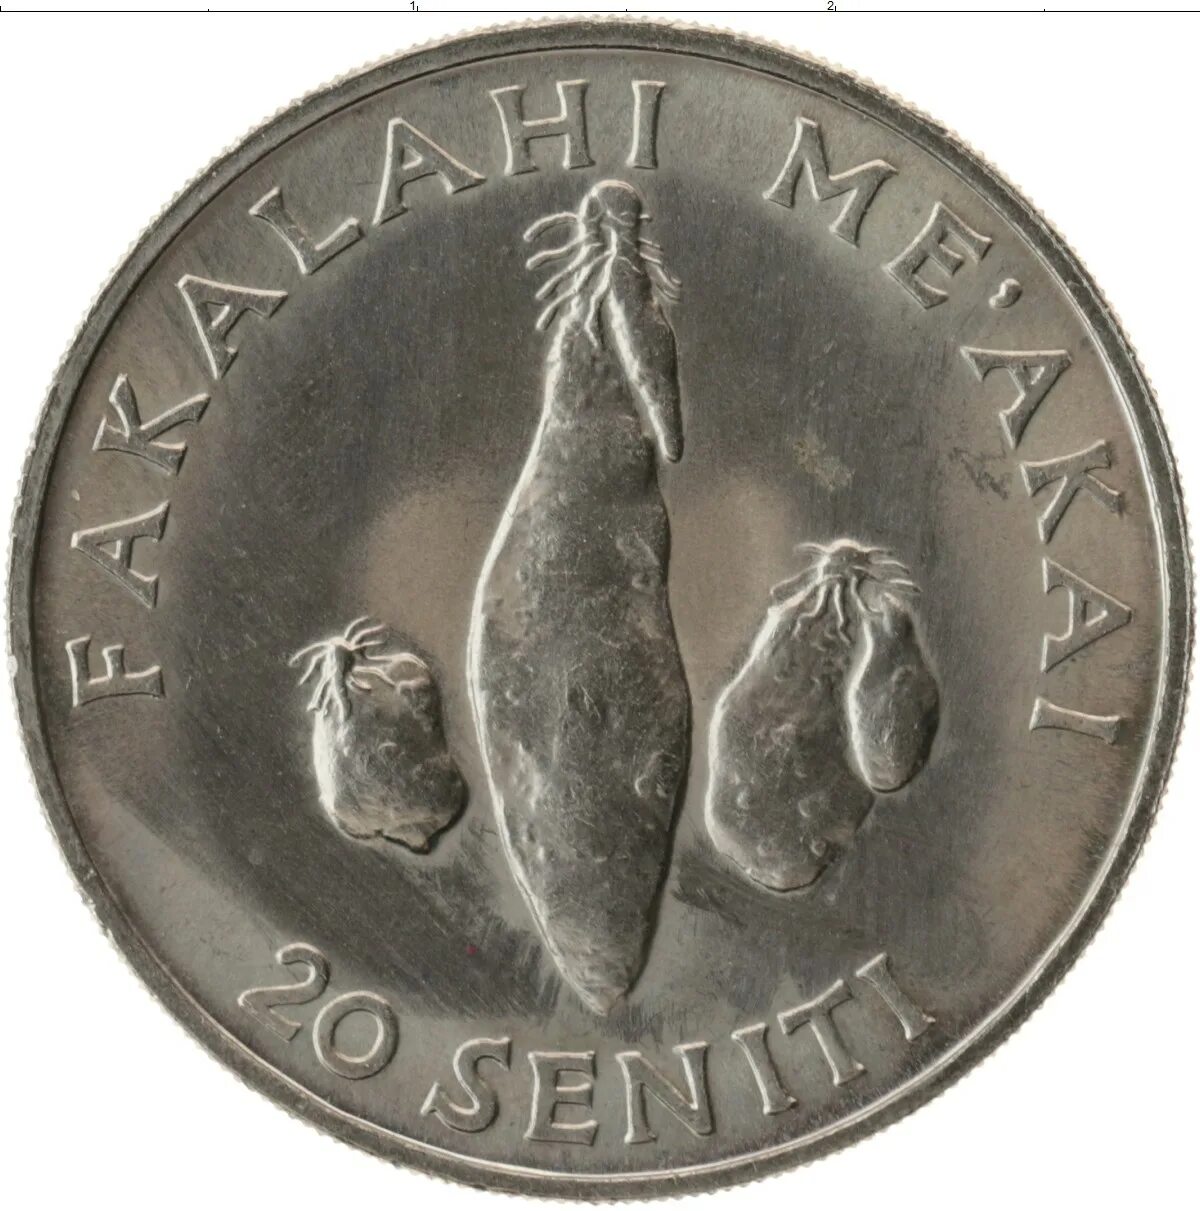 20 от 70 рублей. Тонга 20 сенити 1977 FAO. Монеты Тонга. Монеты Тонга 1 паанга, 1981. Монета Тонга 20 сенити 1979 ФАО.